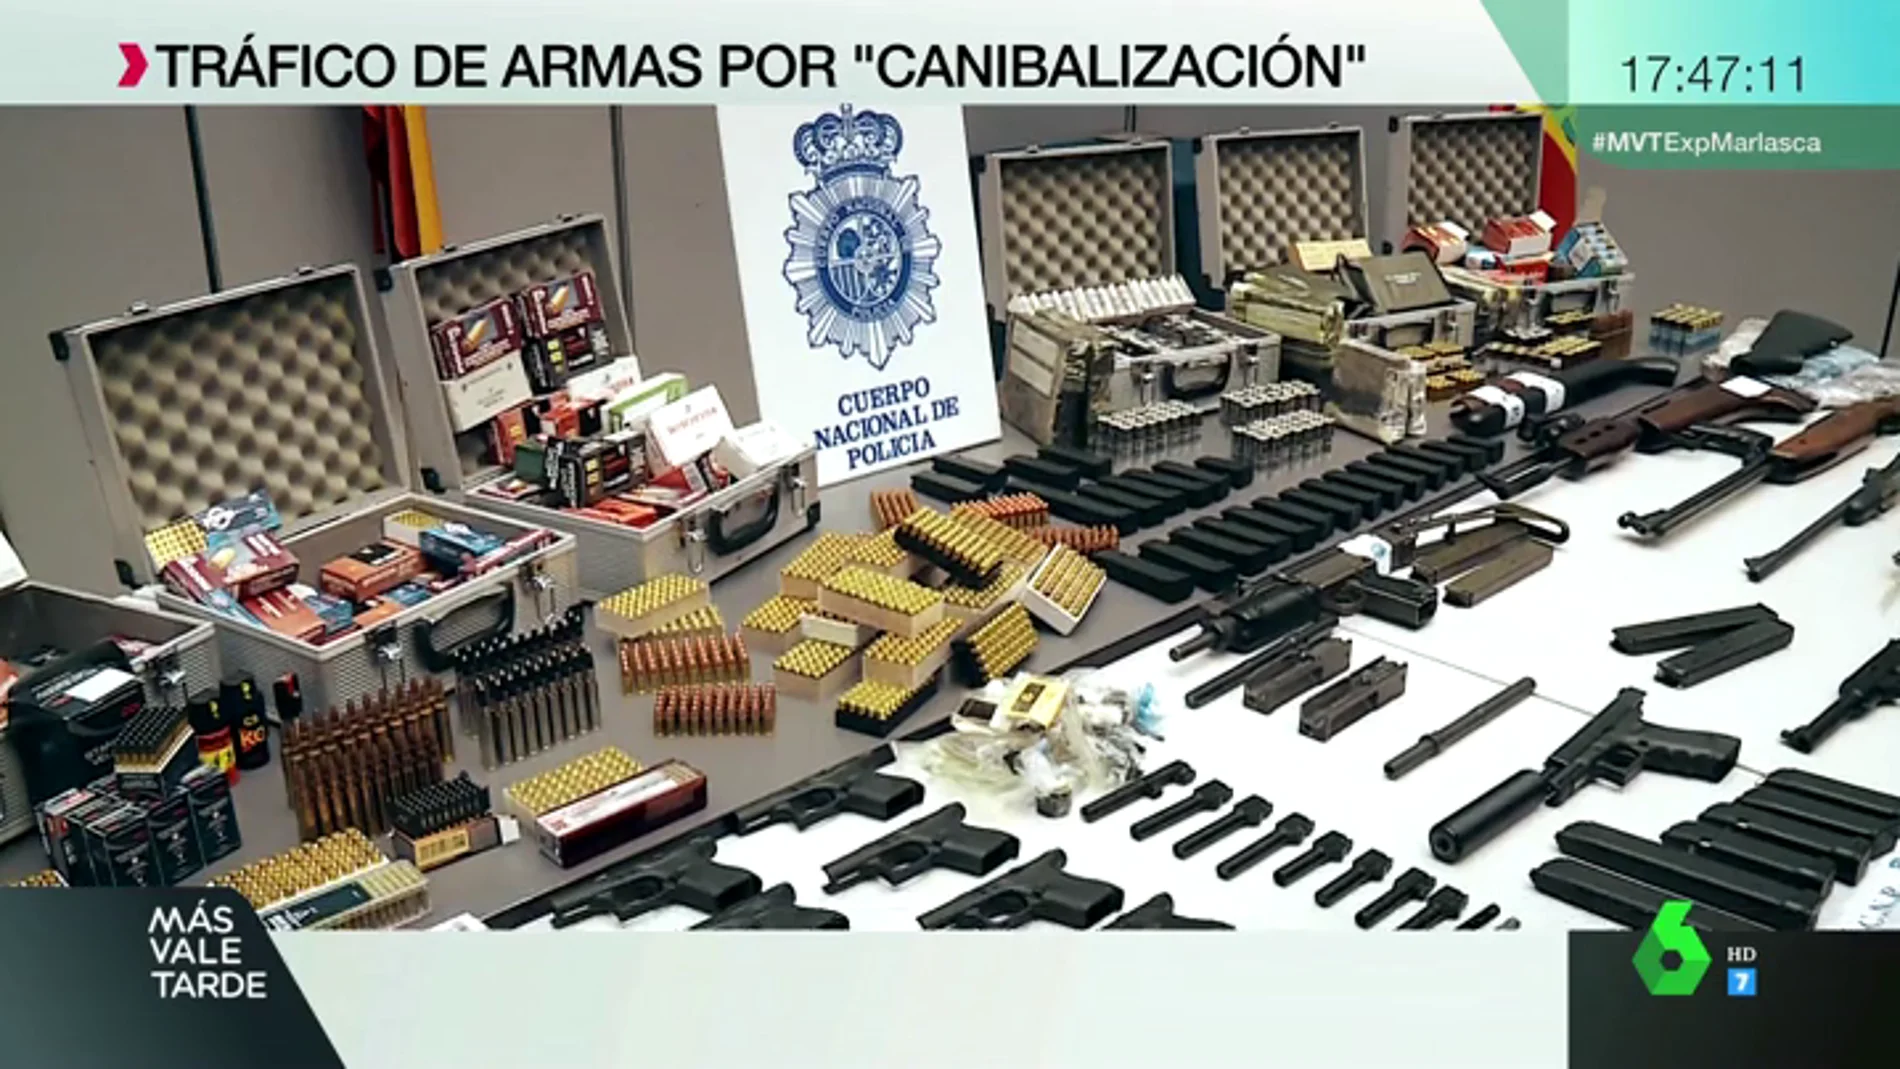 Expediente Marlasca accede al arsenal de un fabricante de armas en Dos Hermanas, Sevilla